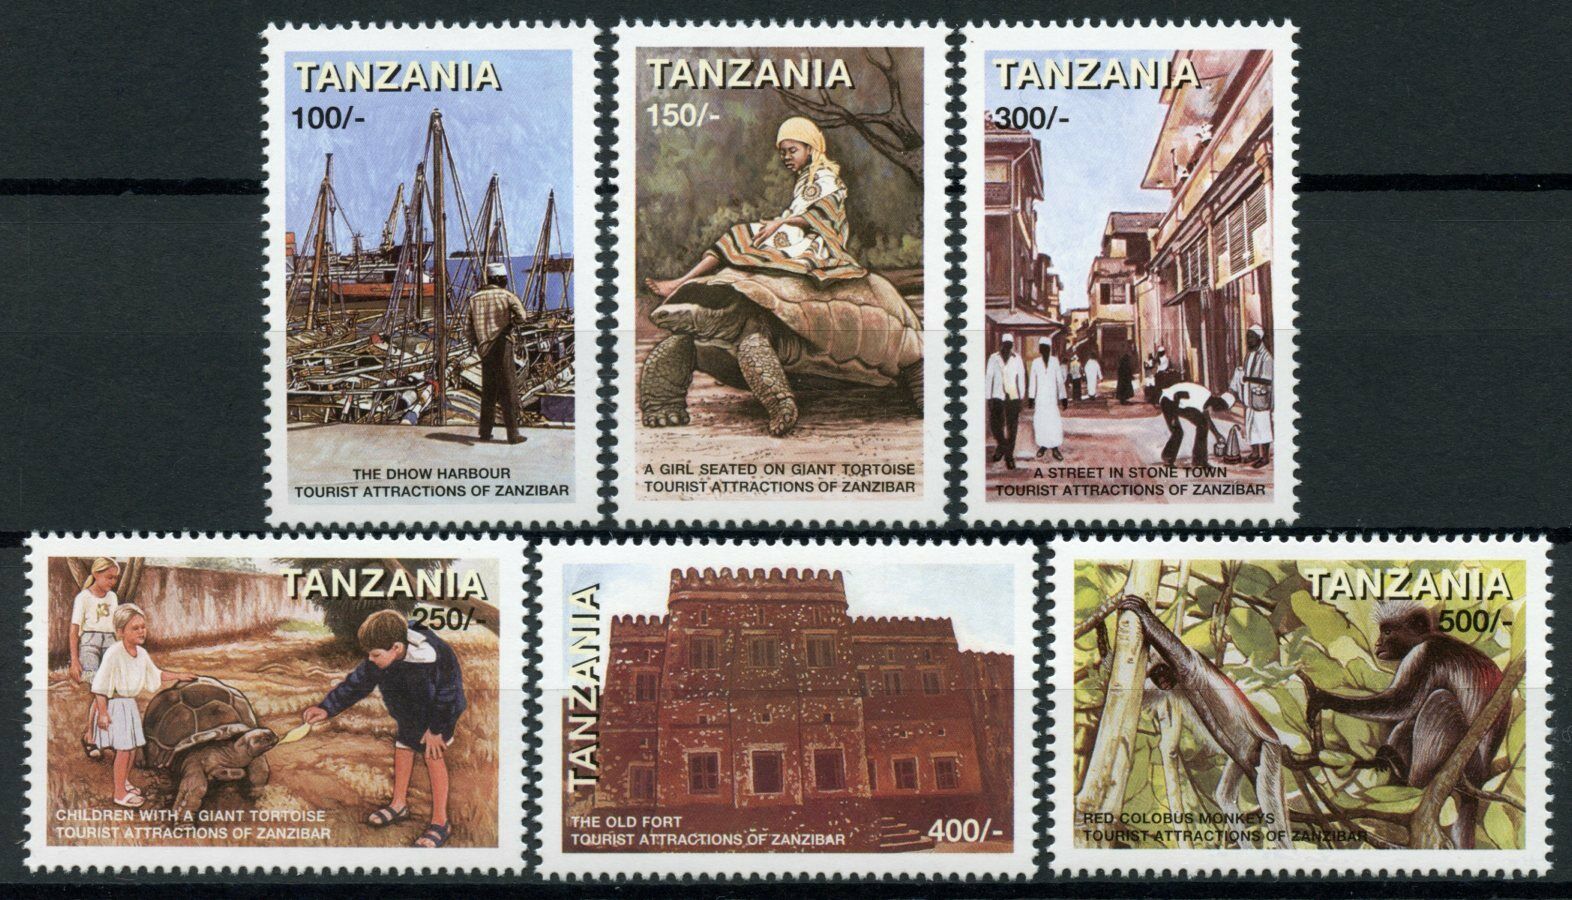 Tanzania Stamps 1998 MNH Zanzibar Tourist Attractions Tortoises Monkeys 6v Set